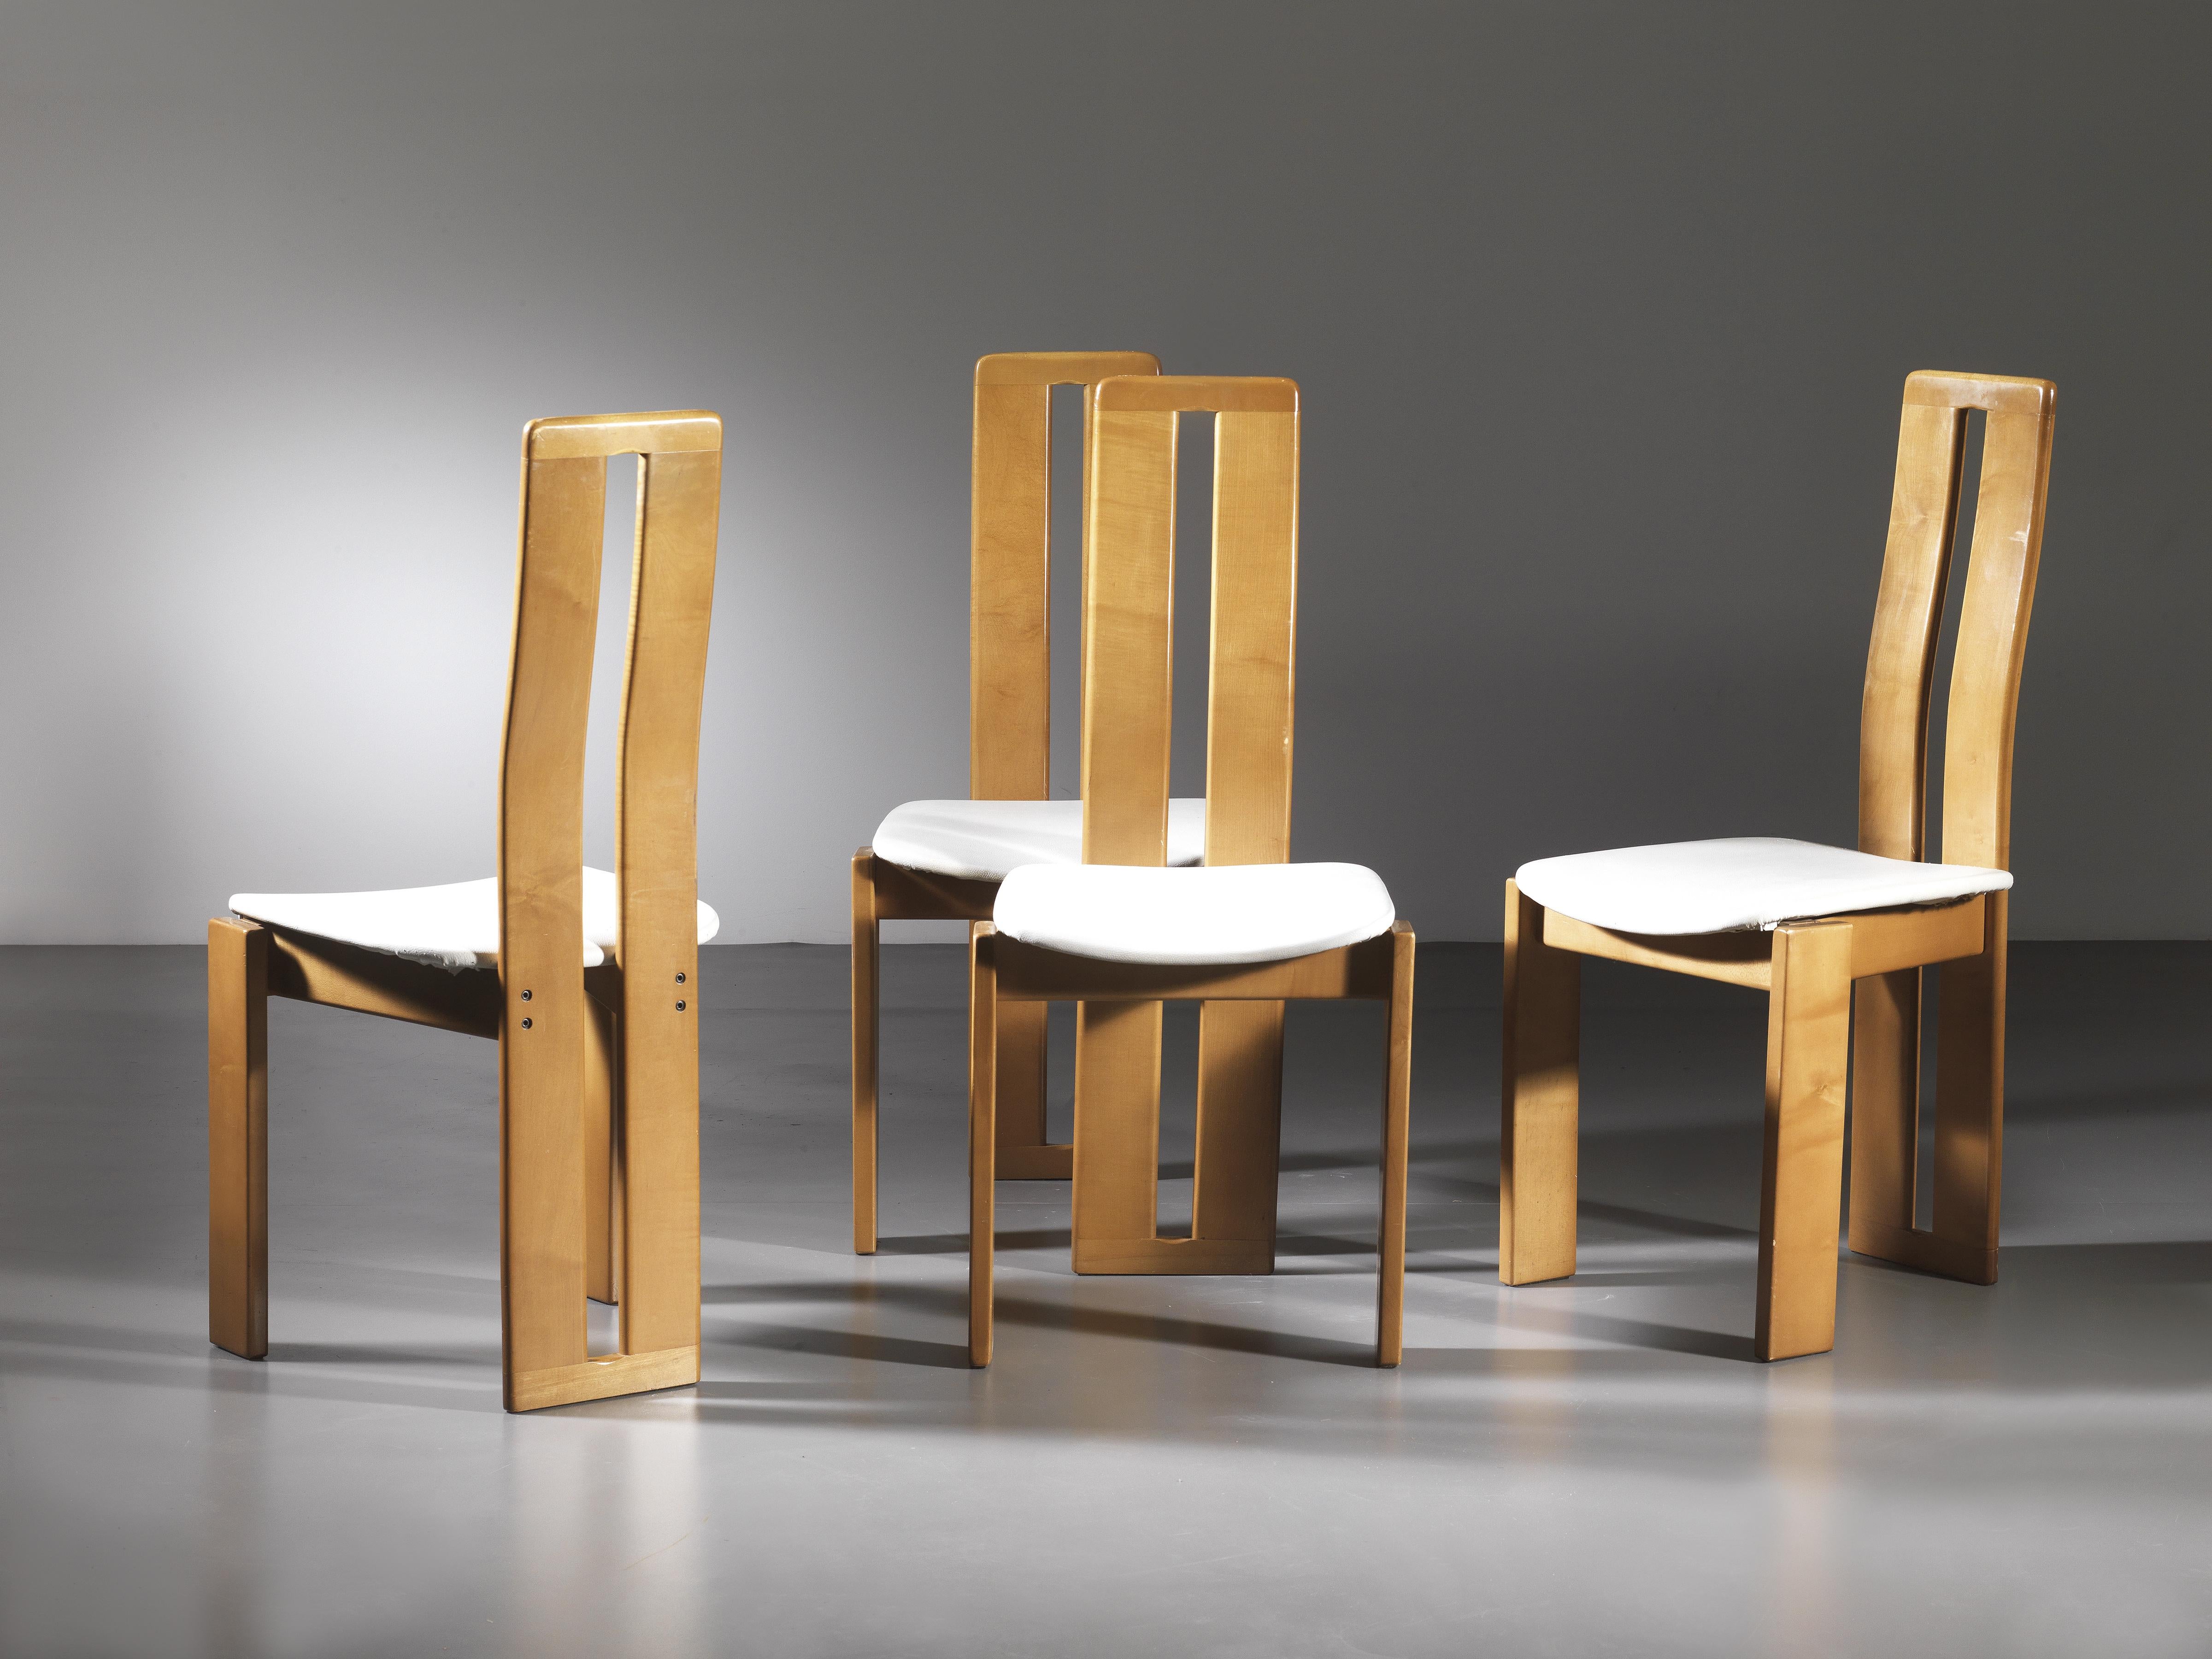 Ensemble de quatre chaises par Mario Marenco, Mobil Girgi, Italie, 1970

Quatre chaises en bois massif au design des années 70, fabriquées par la célèbre société italienne Mobil Girgi.
Les chaises ont une structure en bois de hêtre massif et une